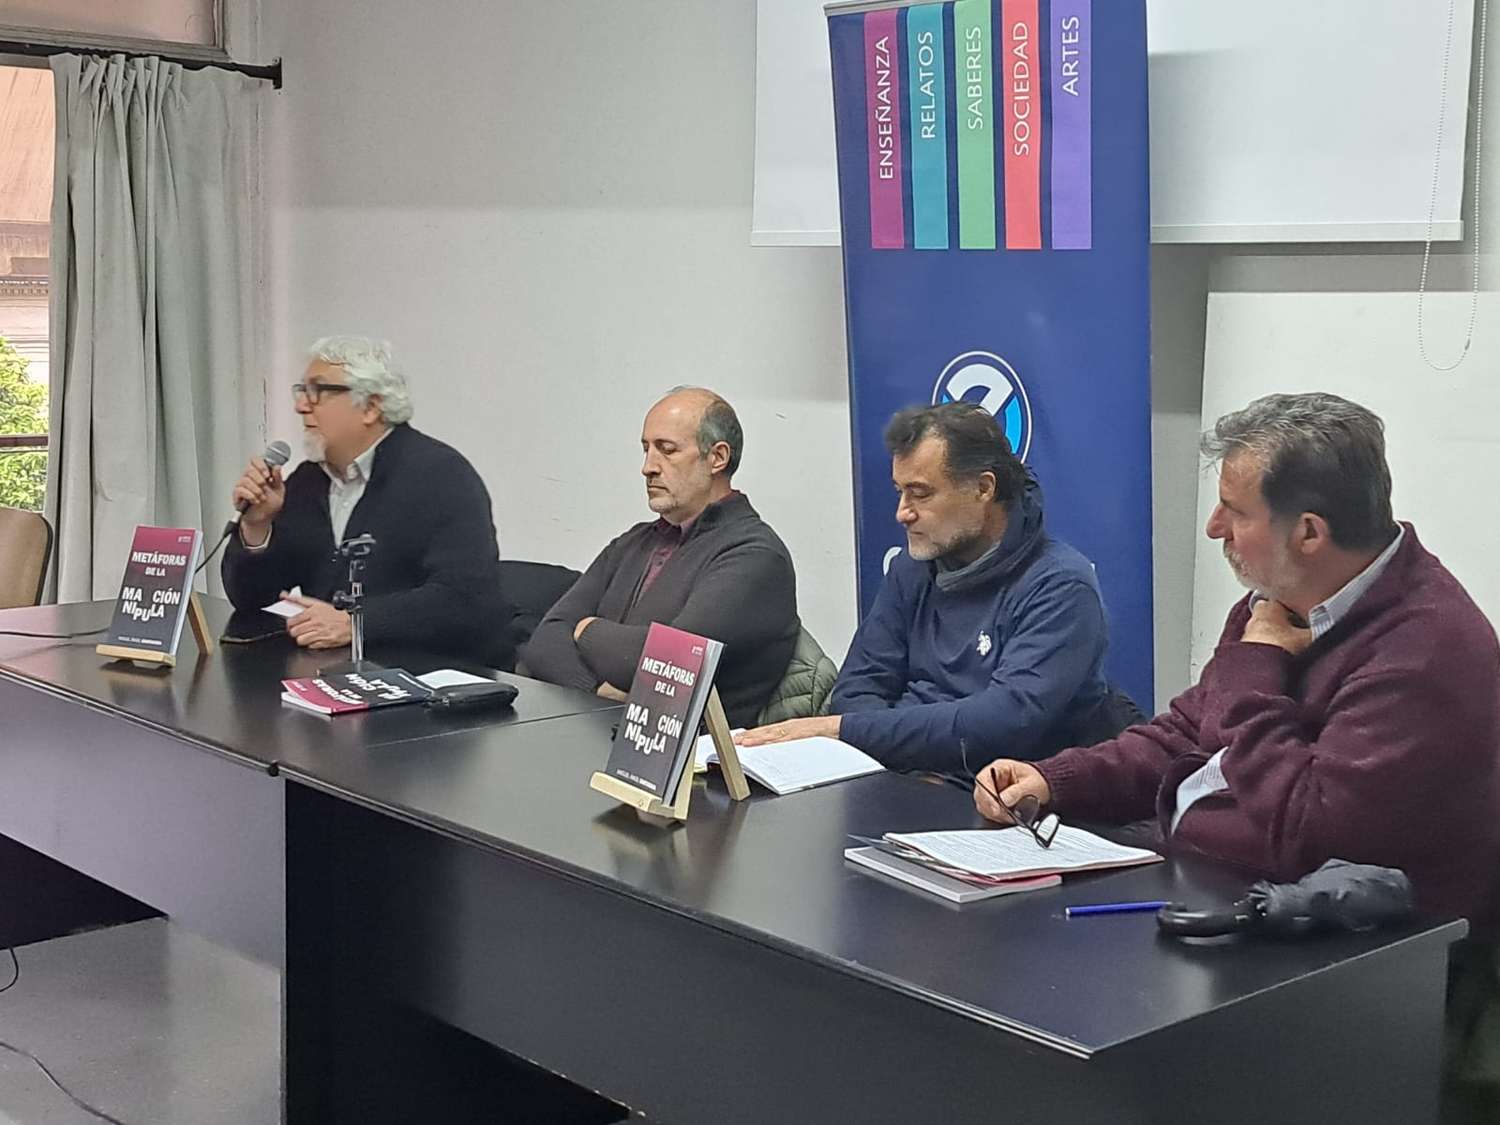 libro unicen (9).jpg
Miguel Ángel Santagada, autor del libro junto a sus colegas Alejandro Ippolito, Juan Claudio Morel y Tomas Landivar